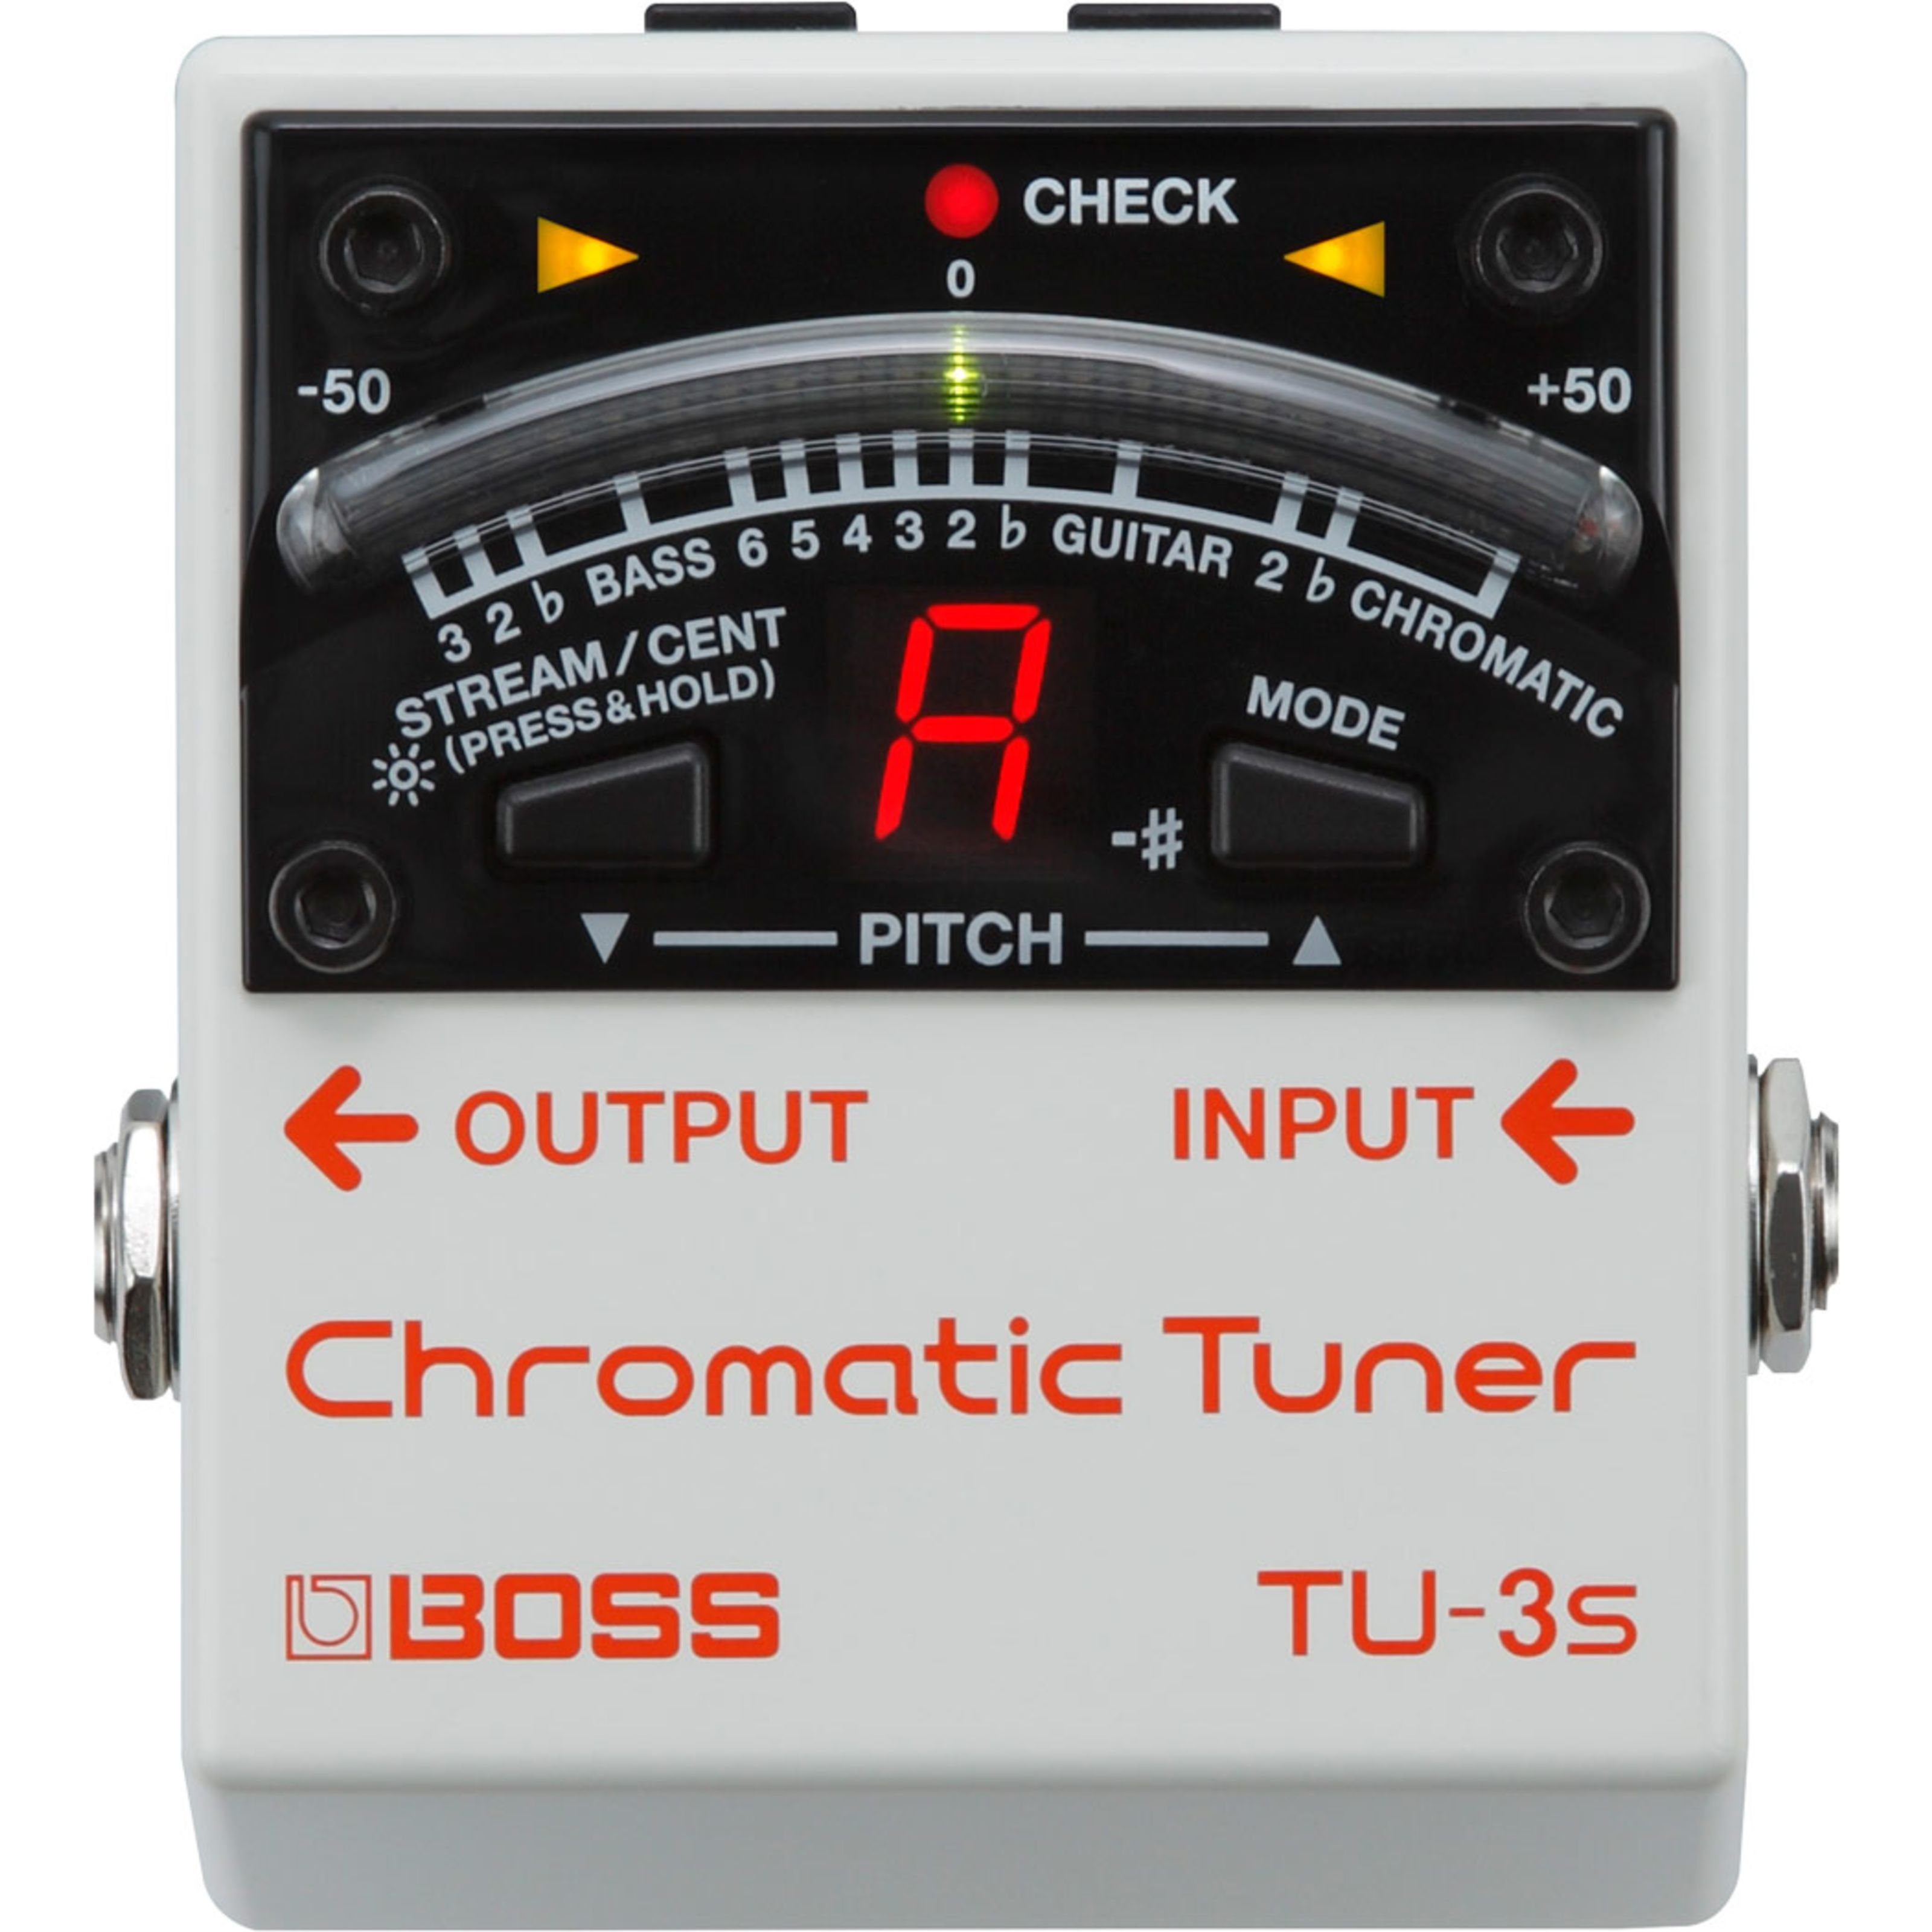 BOSS Stimmgerät, (TU-3S Chromatic Tuner), TU-3S Chromatic Tuner - Stimmgerät für Gitarren